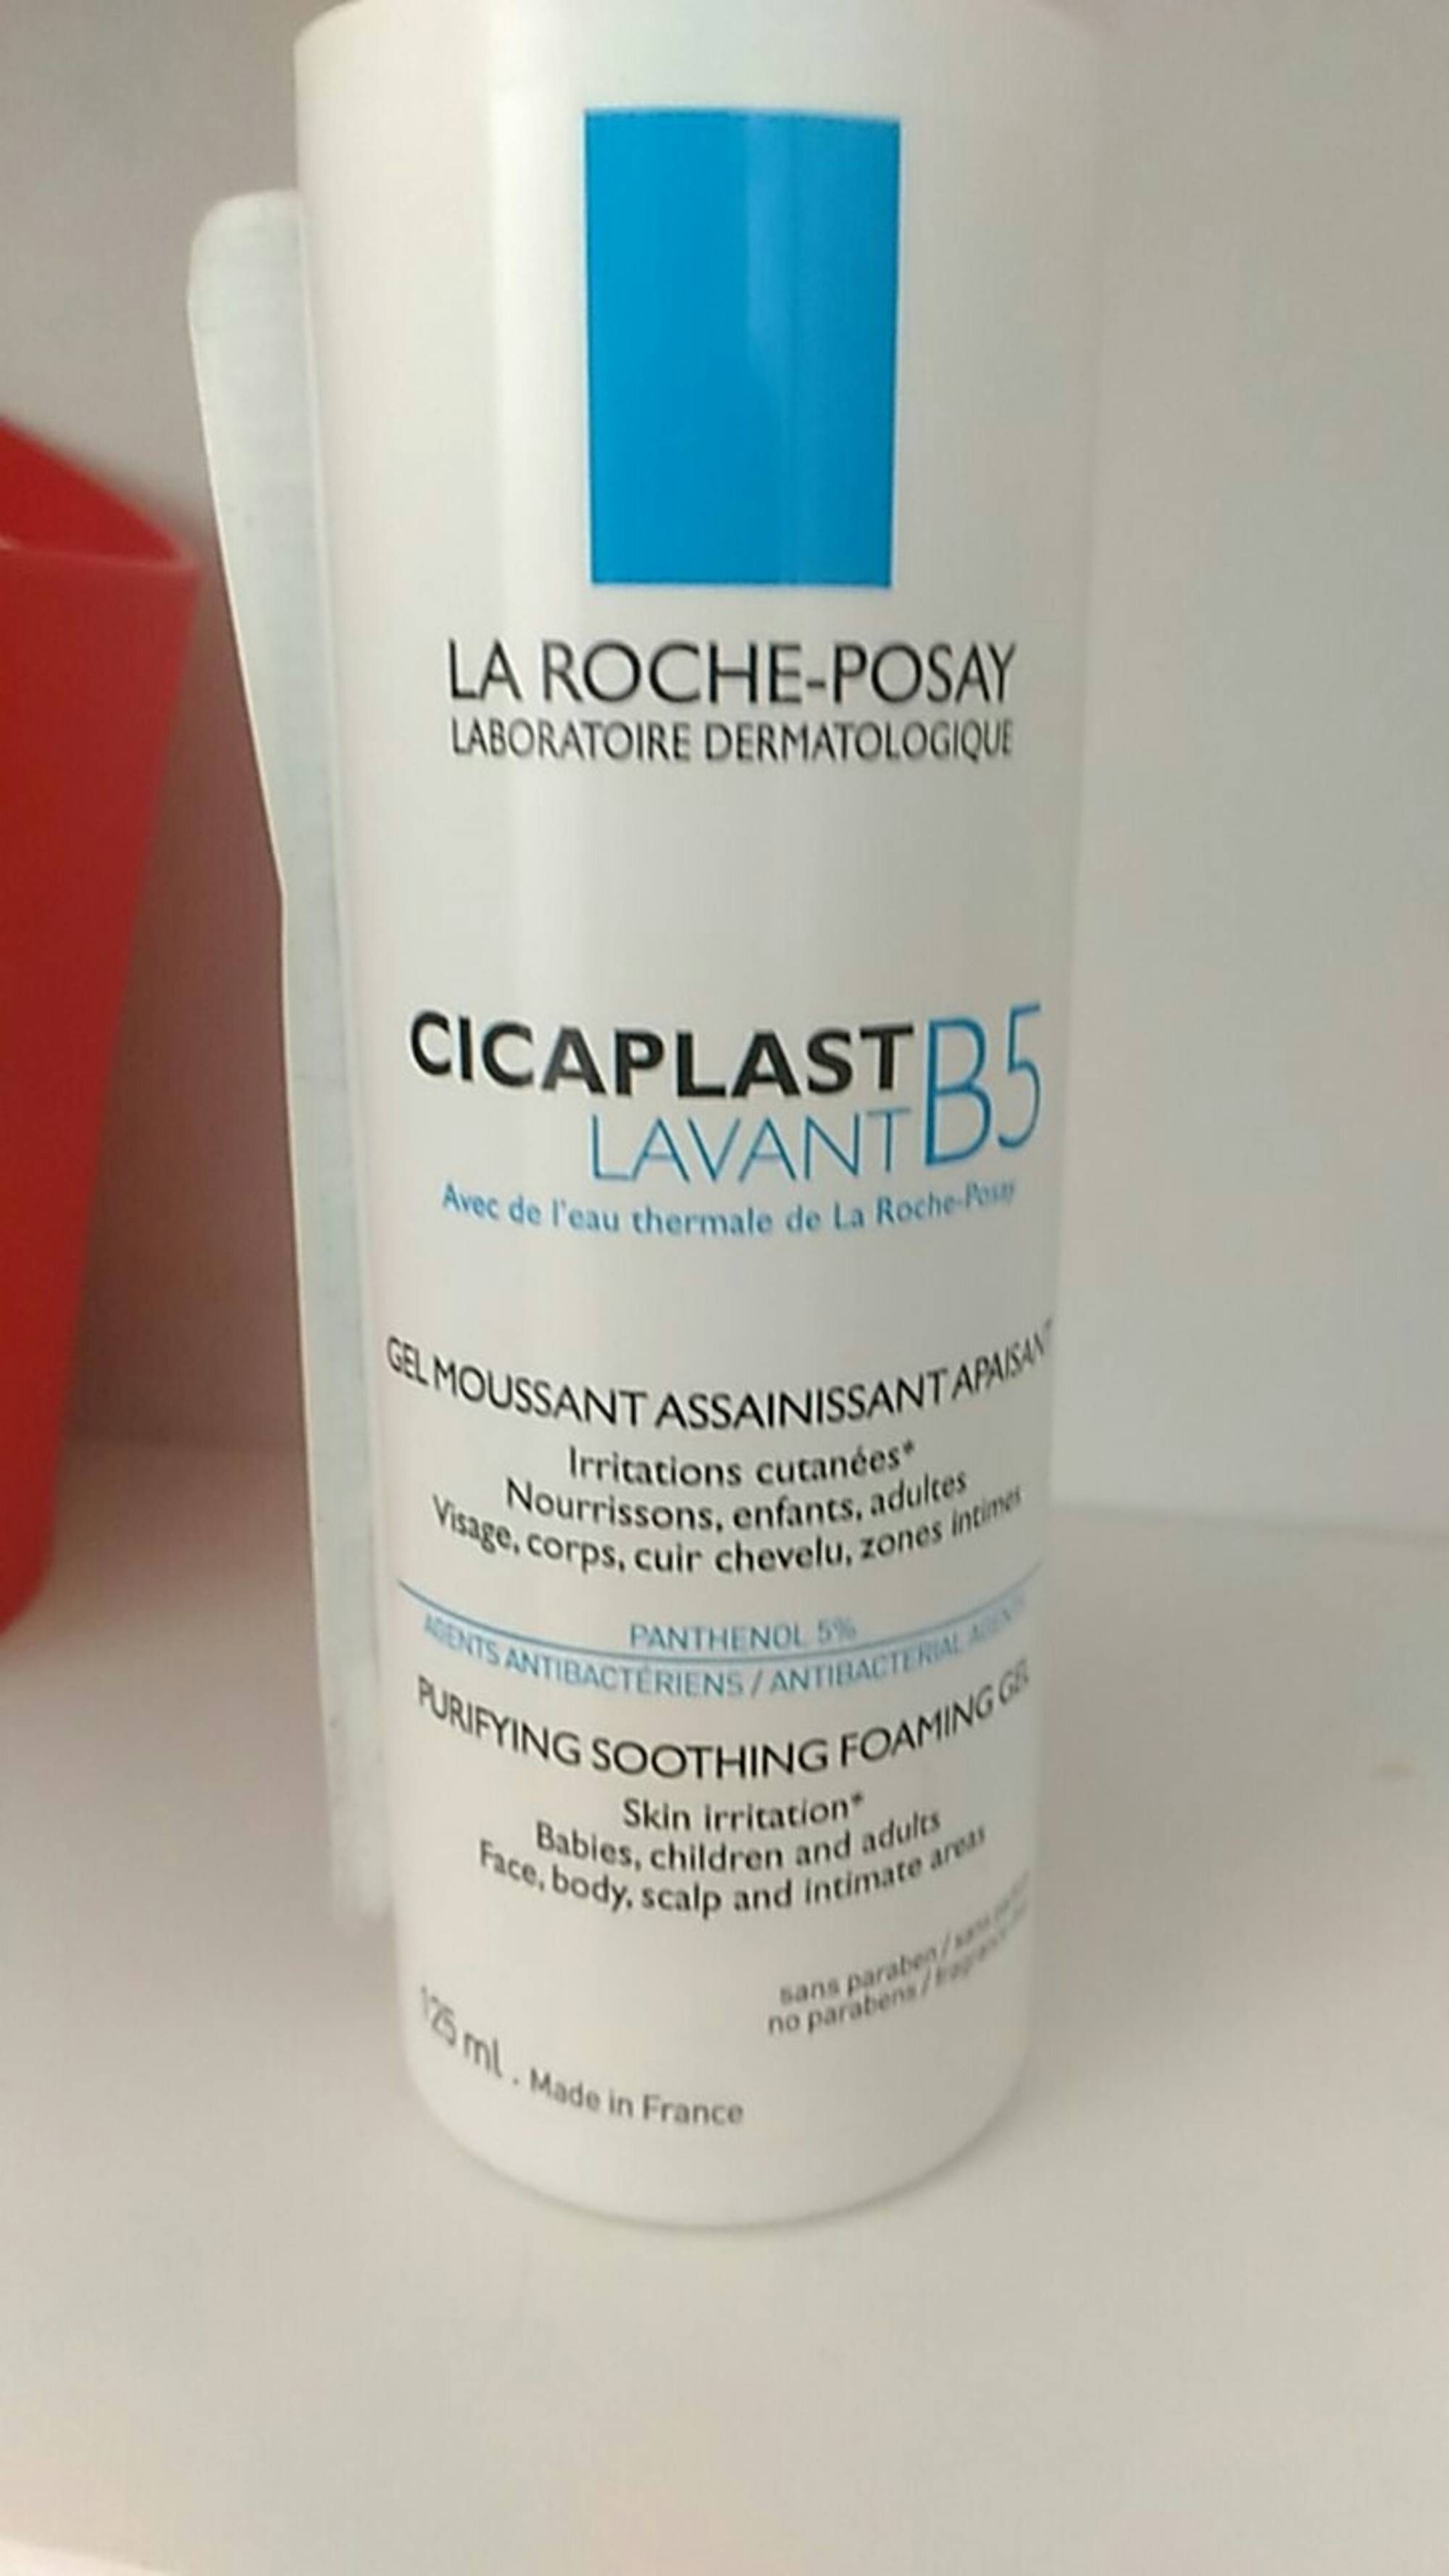 LA ROCHE-POSAY - Cicaplast lavant B5 - Gel moussant assainissant apaisant